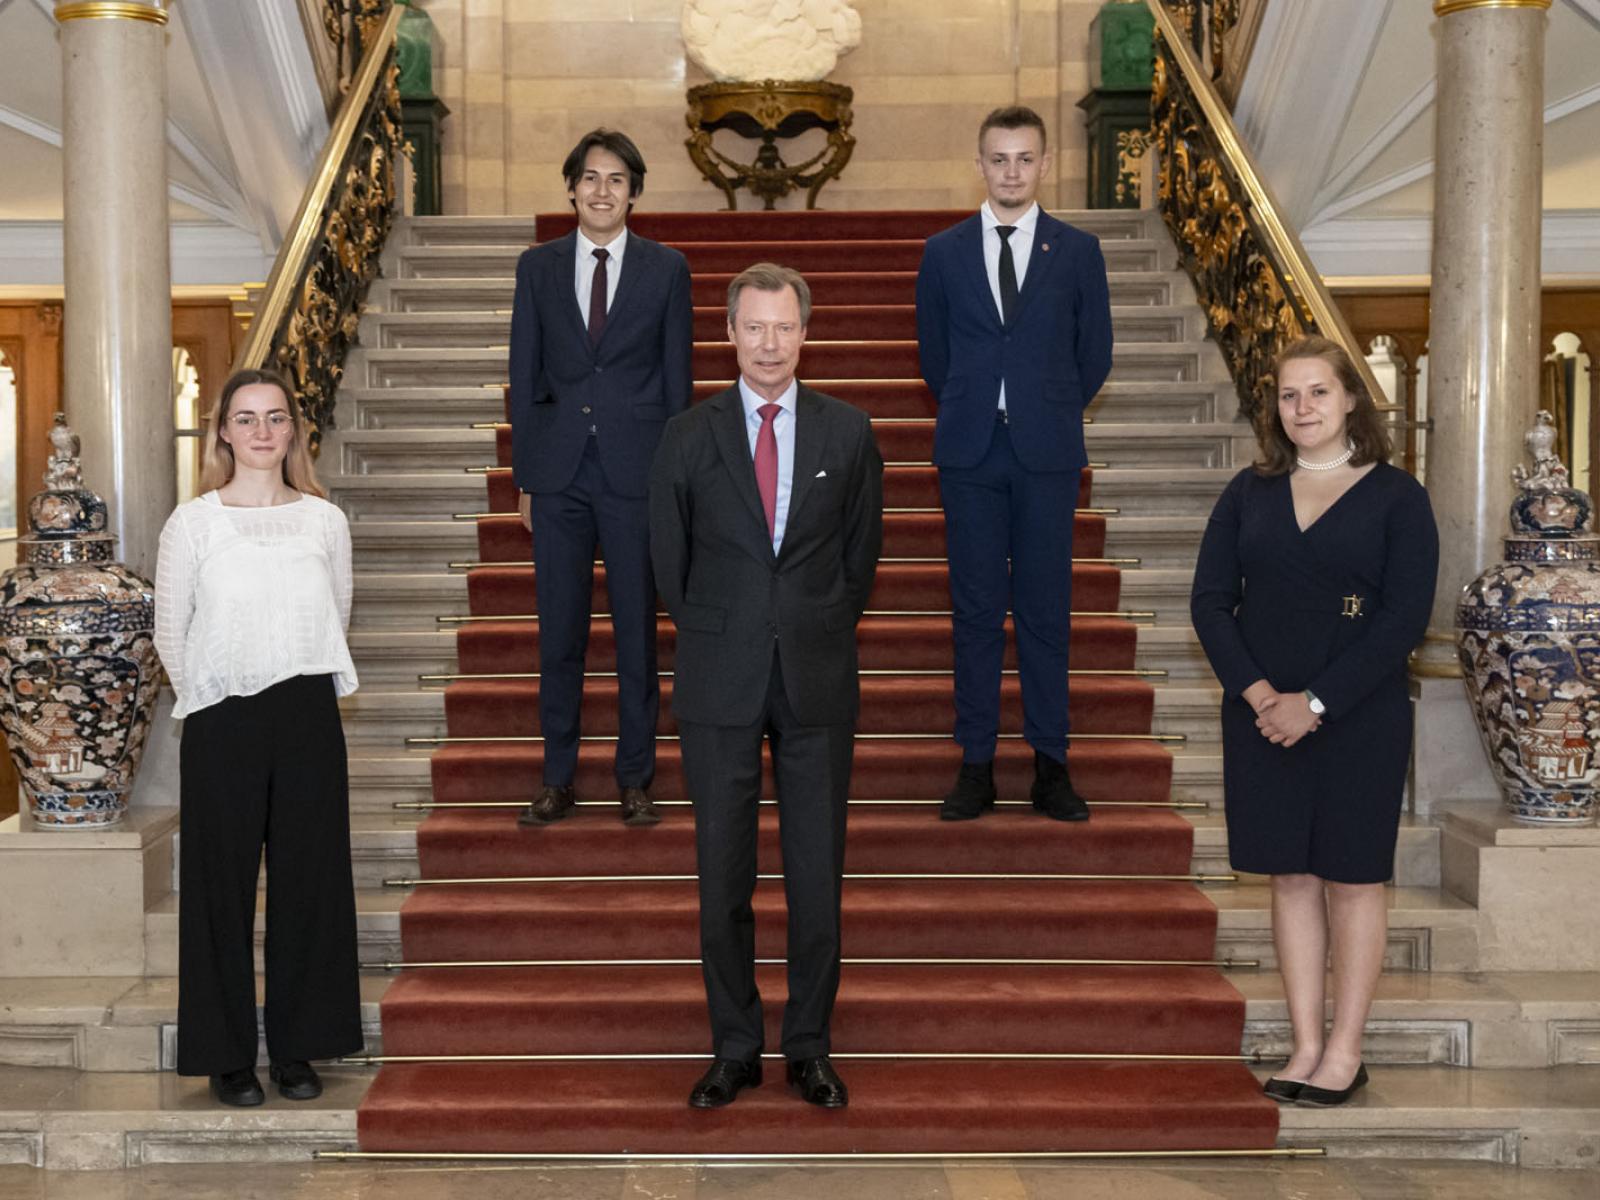 Le Grand-Duc et les jeunes échangent pour une photo officielle dans l'escalier d'honneur